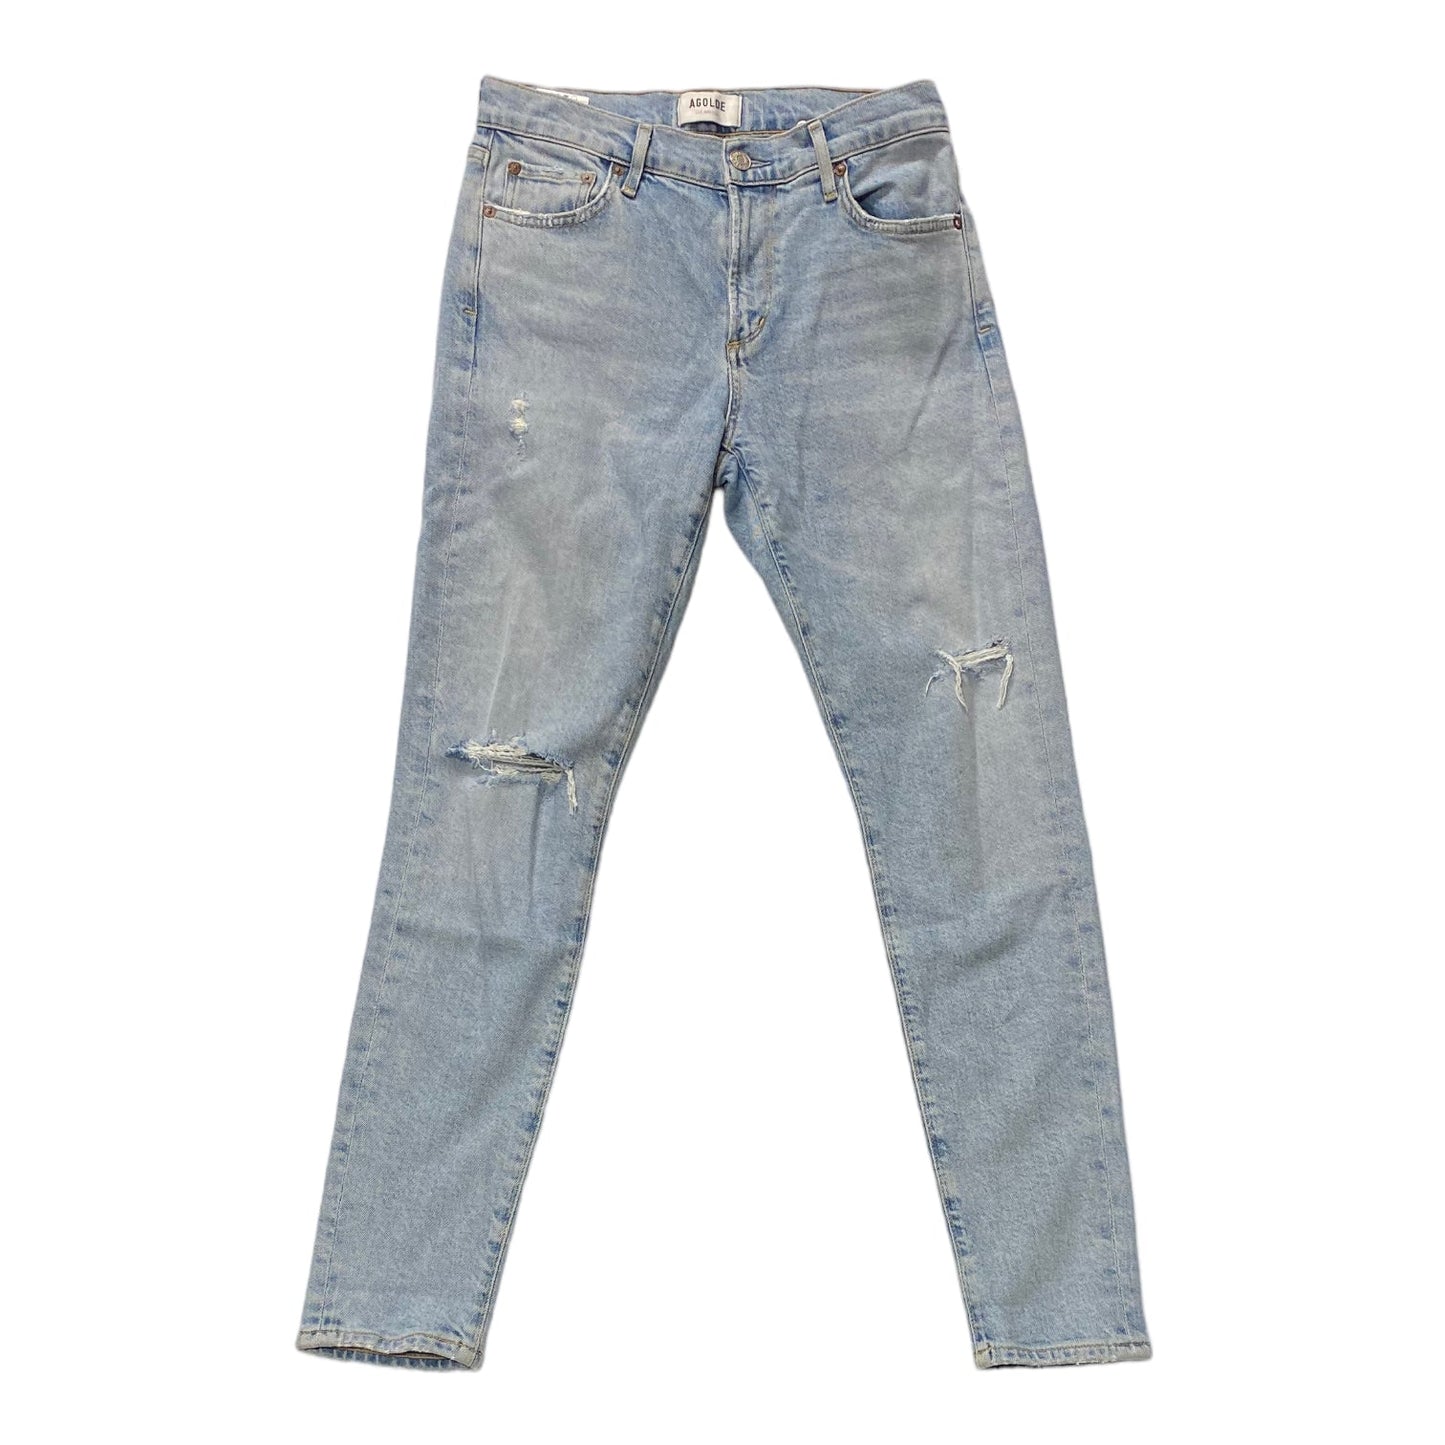 Blue Denim Jeans Skinny Agolde, Size 2